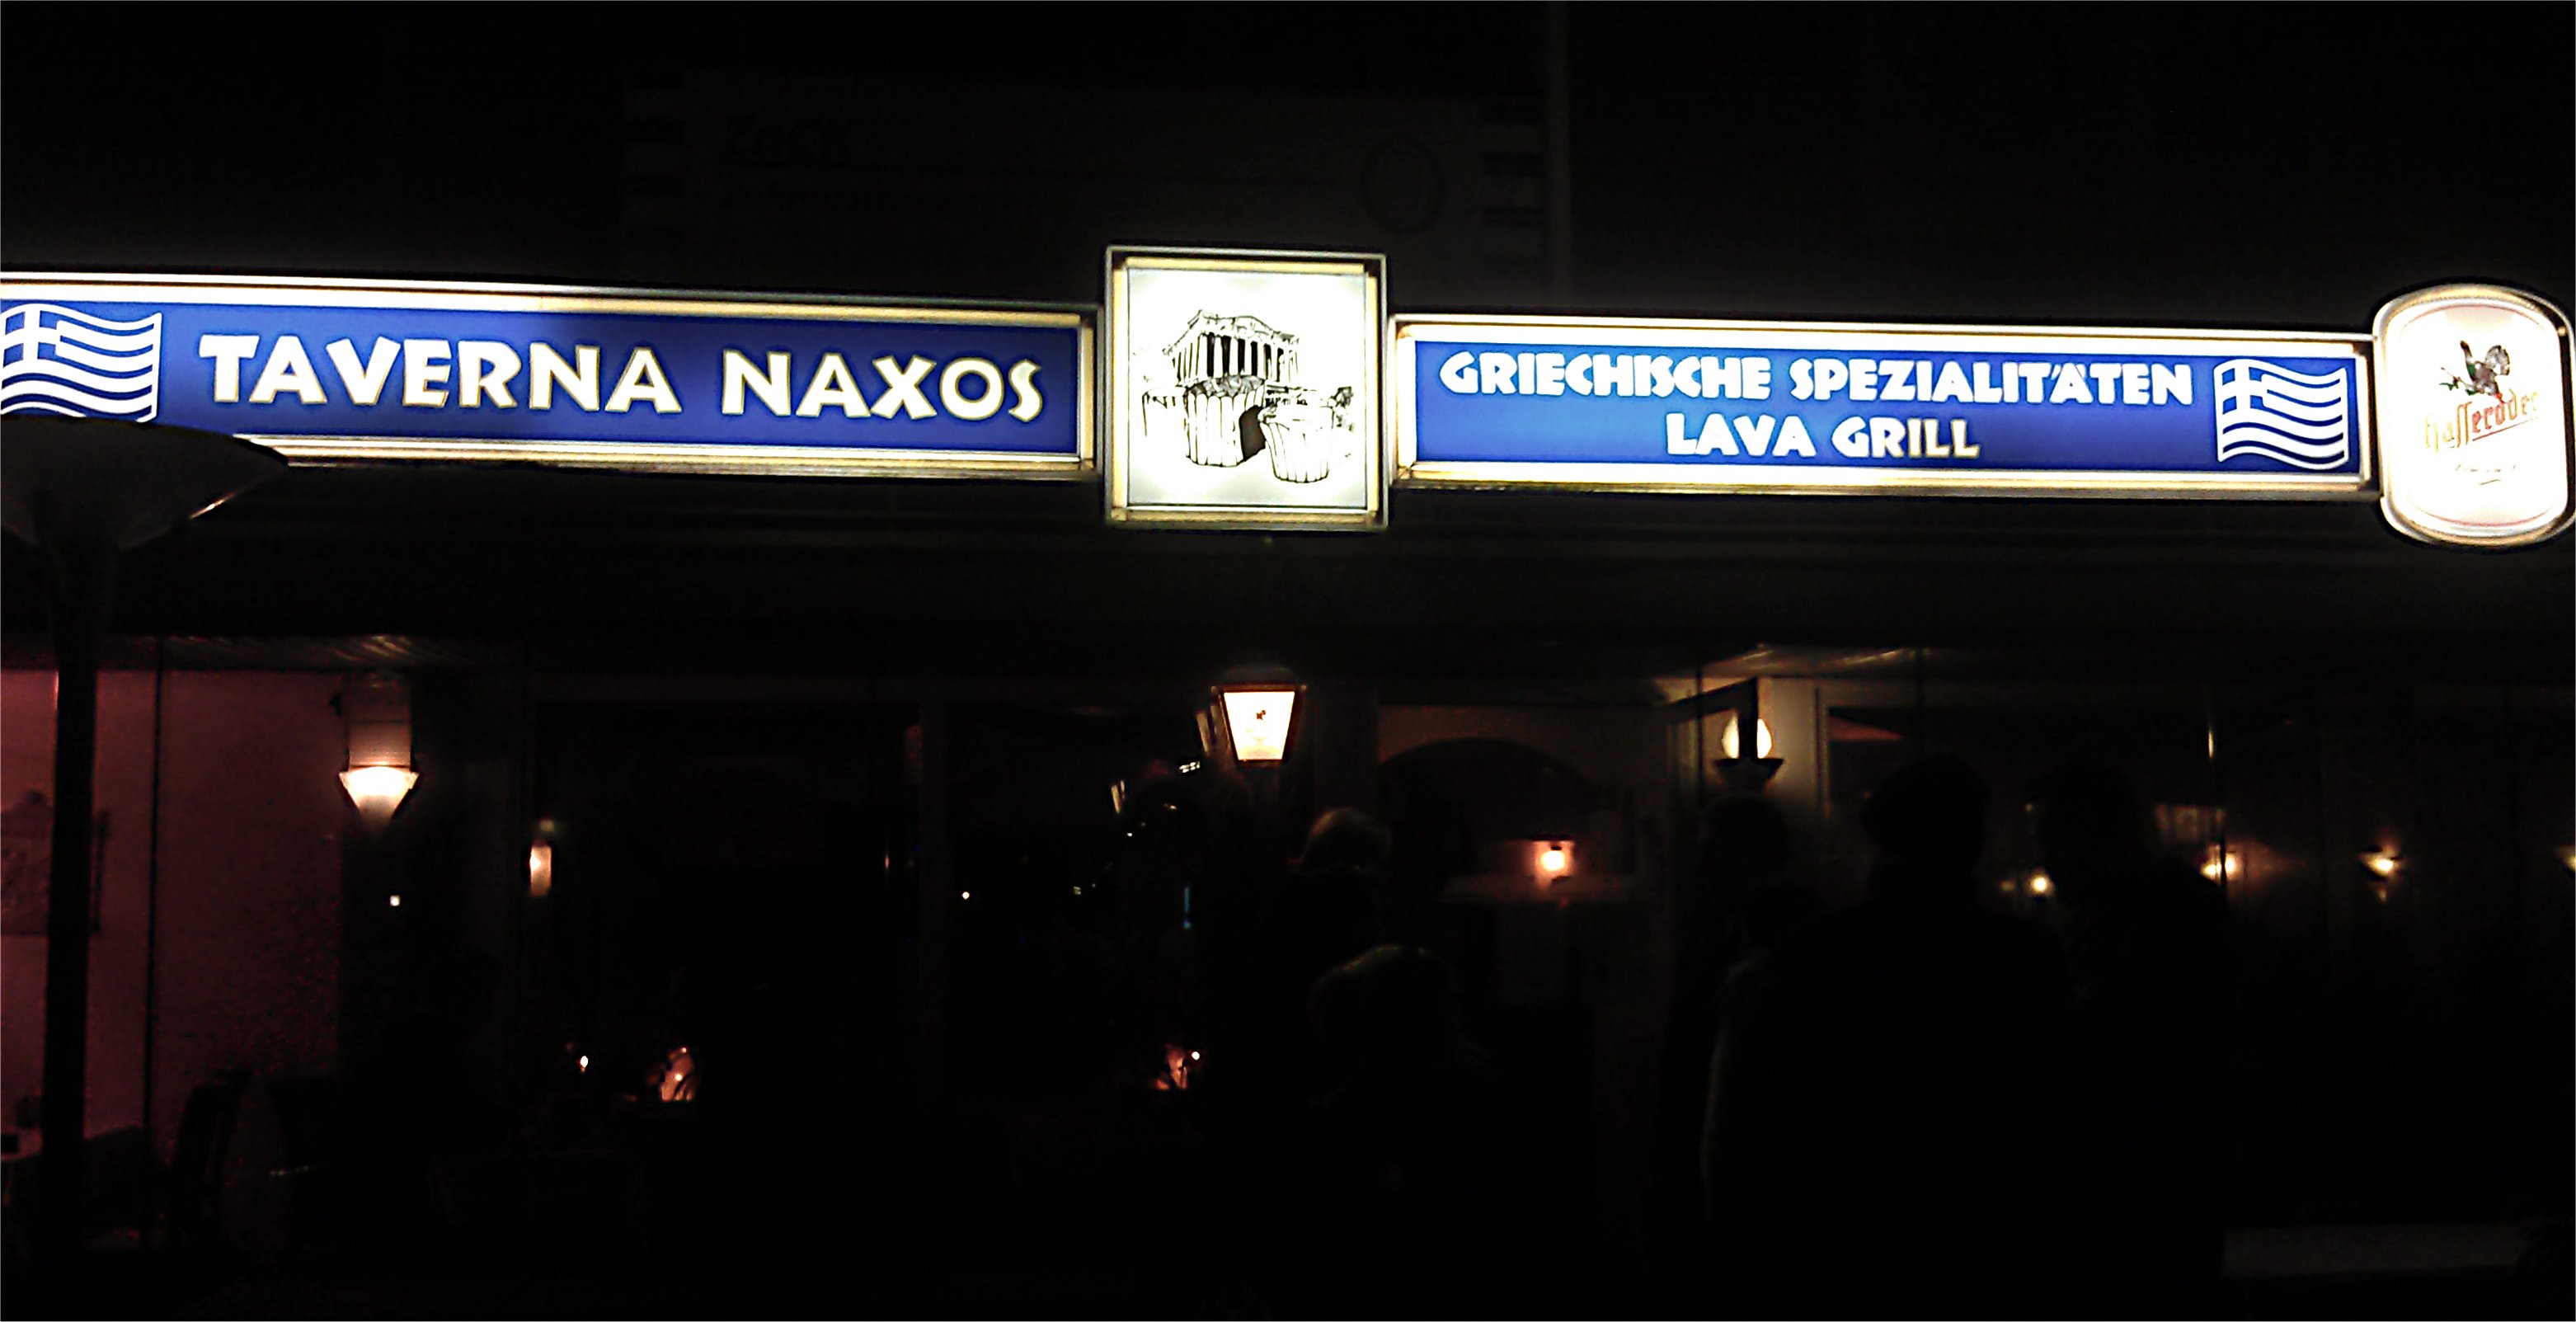 Dunkel wars, das Schild schien helle. Hier der Eingang der Taverna NAXOS auf die Schnelle ;-)